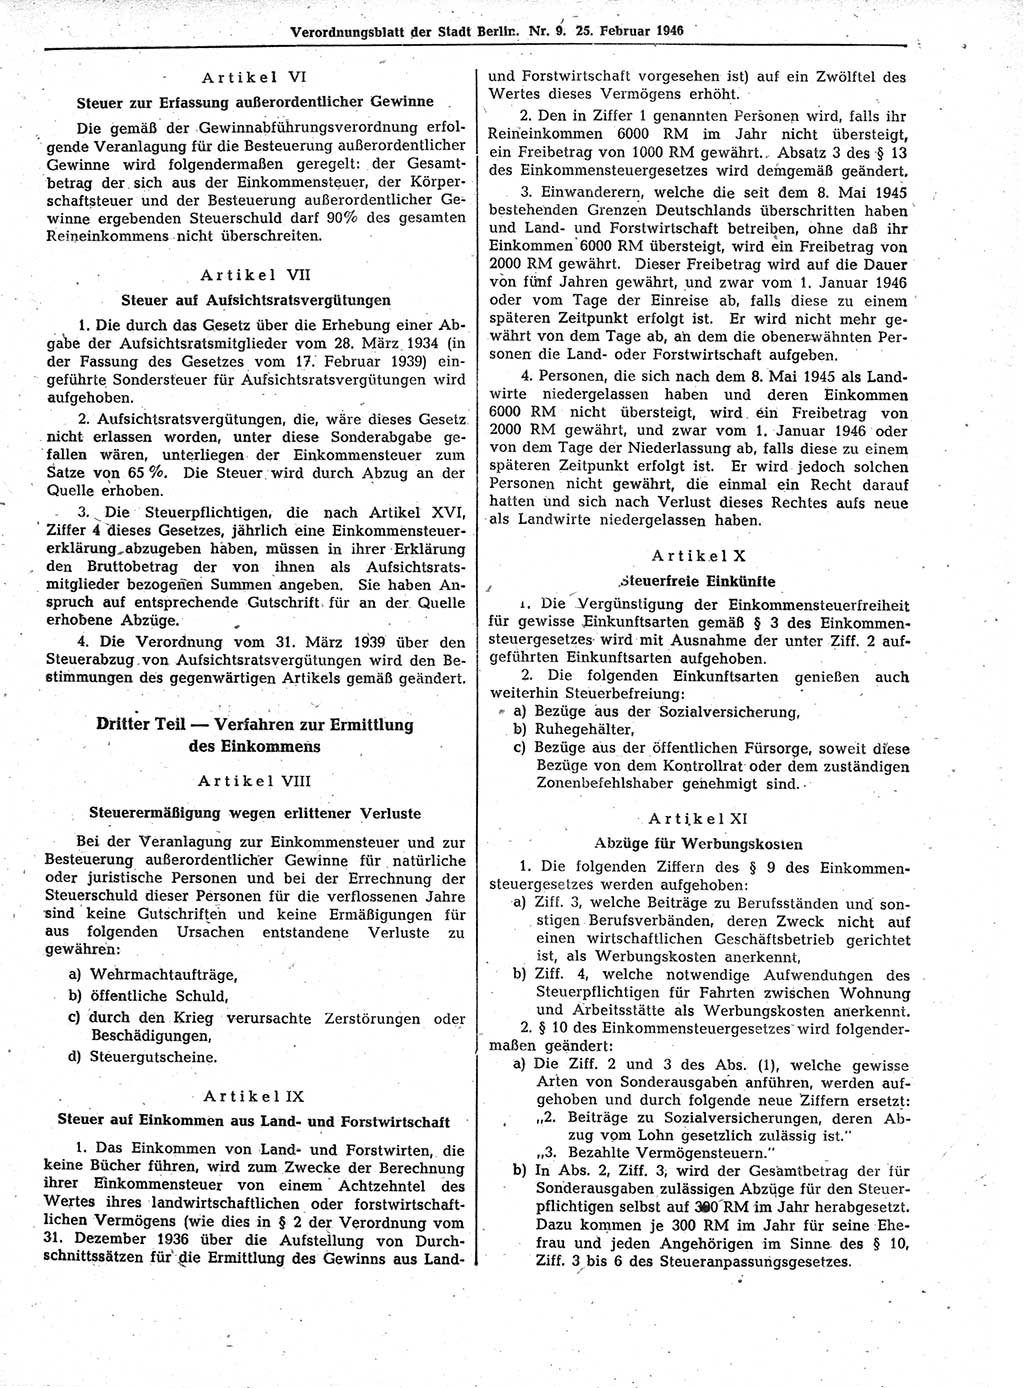 Verordnungsblatt (VOBl.) der Stadt Berlin, für Groß-Berlin 1946, Seite 49 (VOBl. Bln. 1946, S. 49)